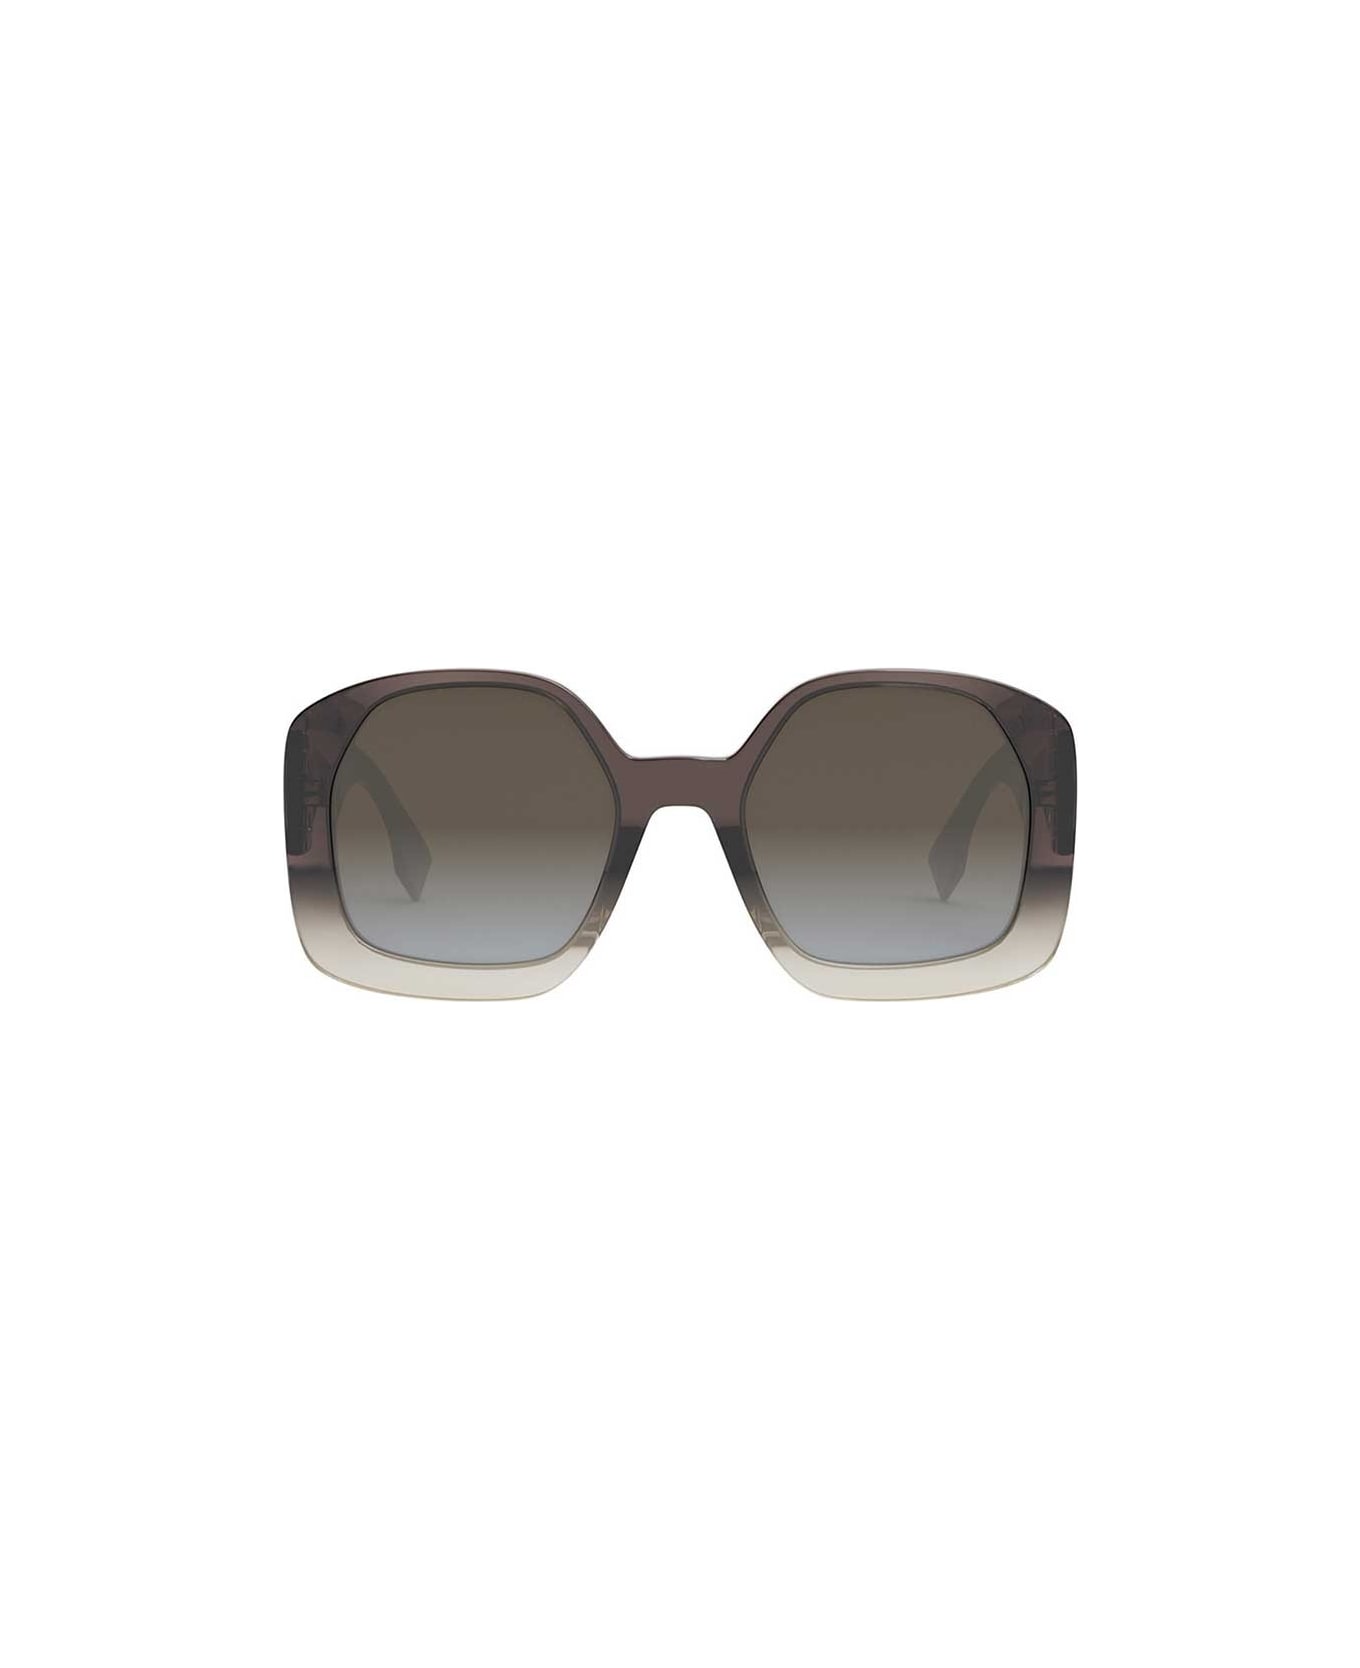 Fendi Eyewear Sunglasses - Marrone/Marrone